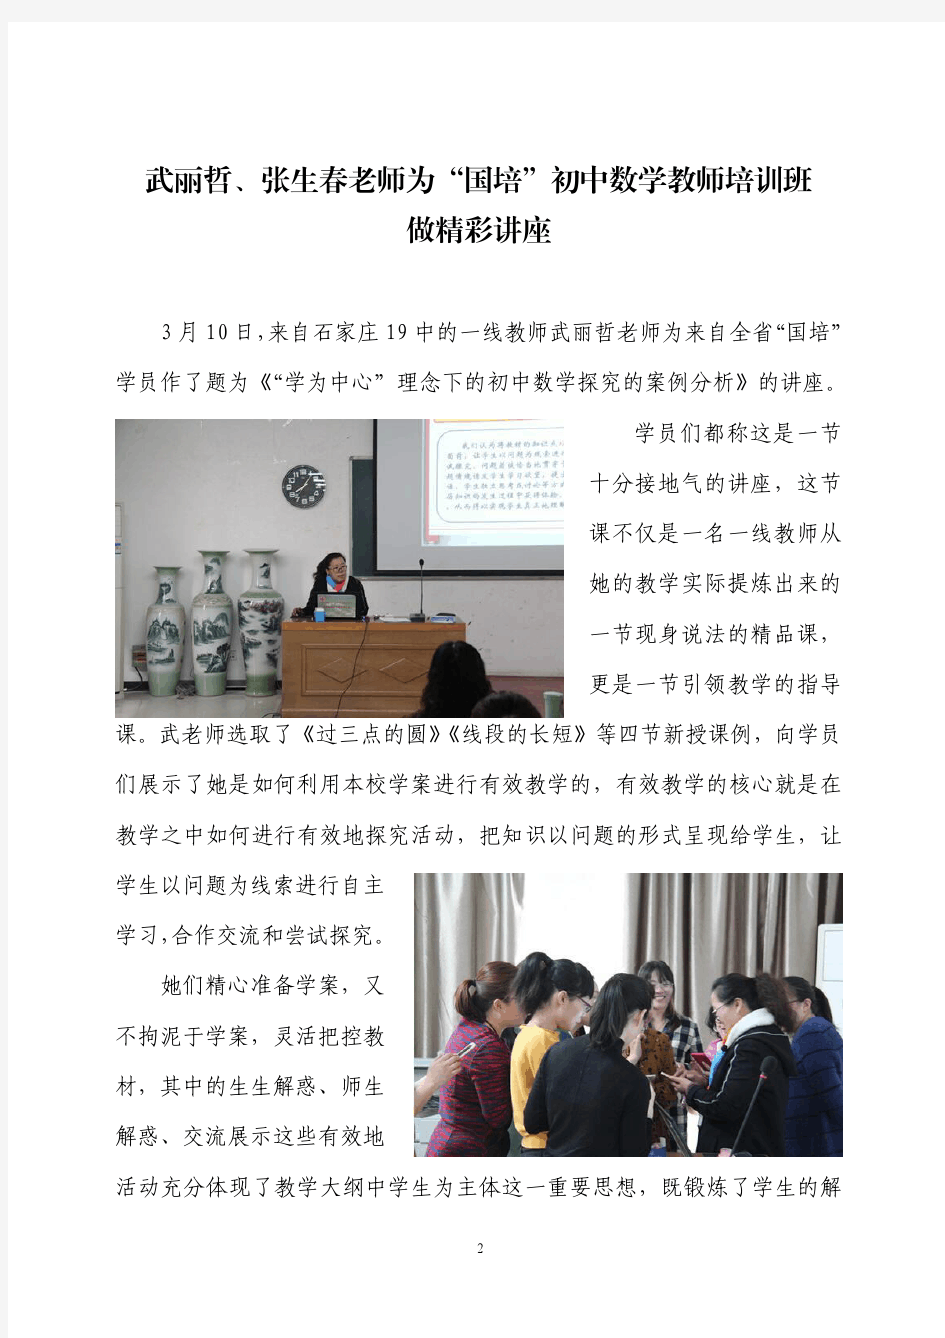 2017年国培计划——河北中小学教师培训